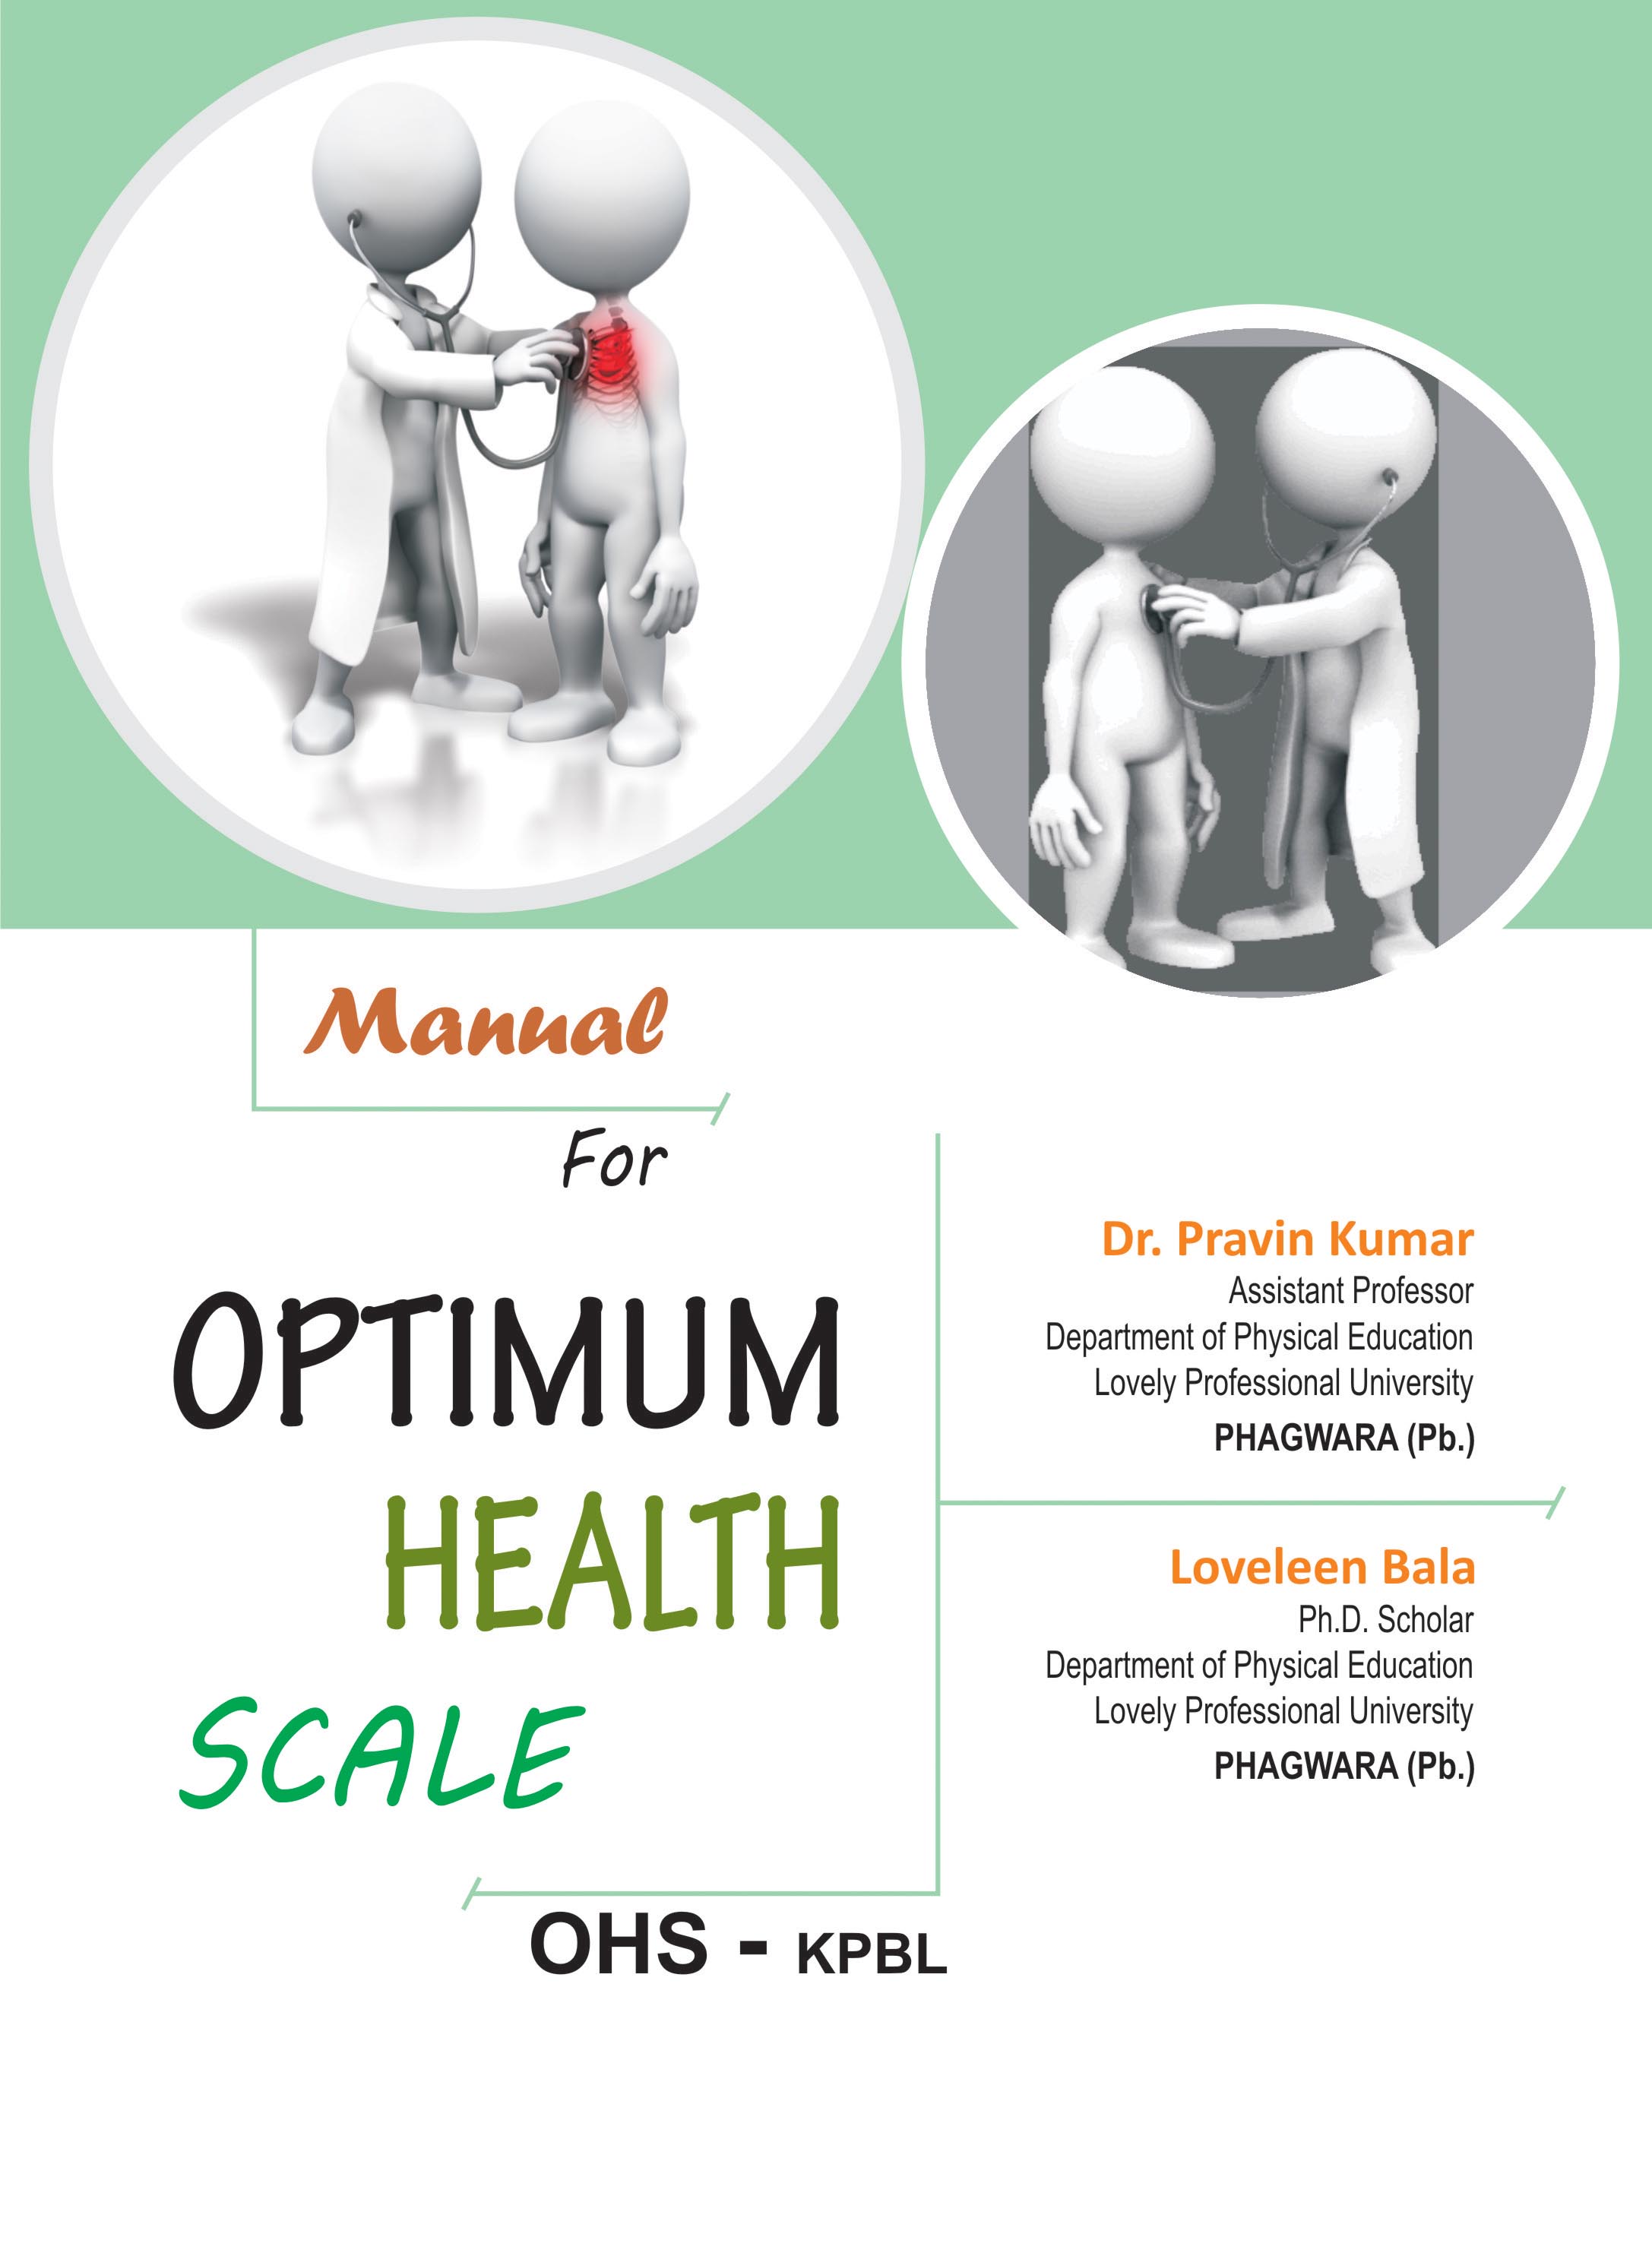 OPTIMUM-HEALTH-SCALE